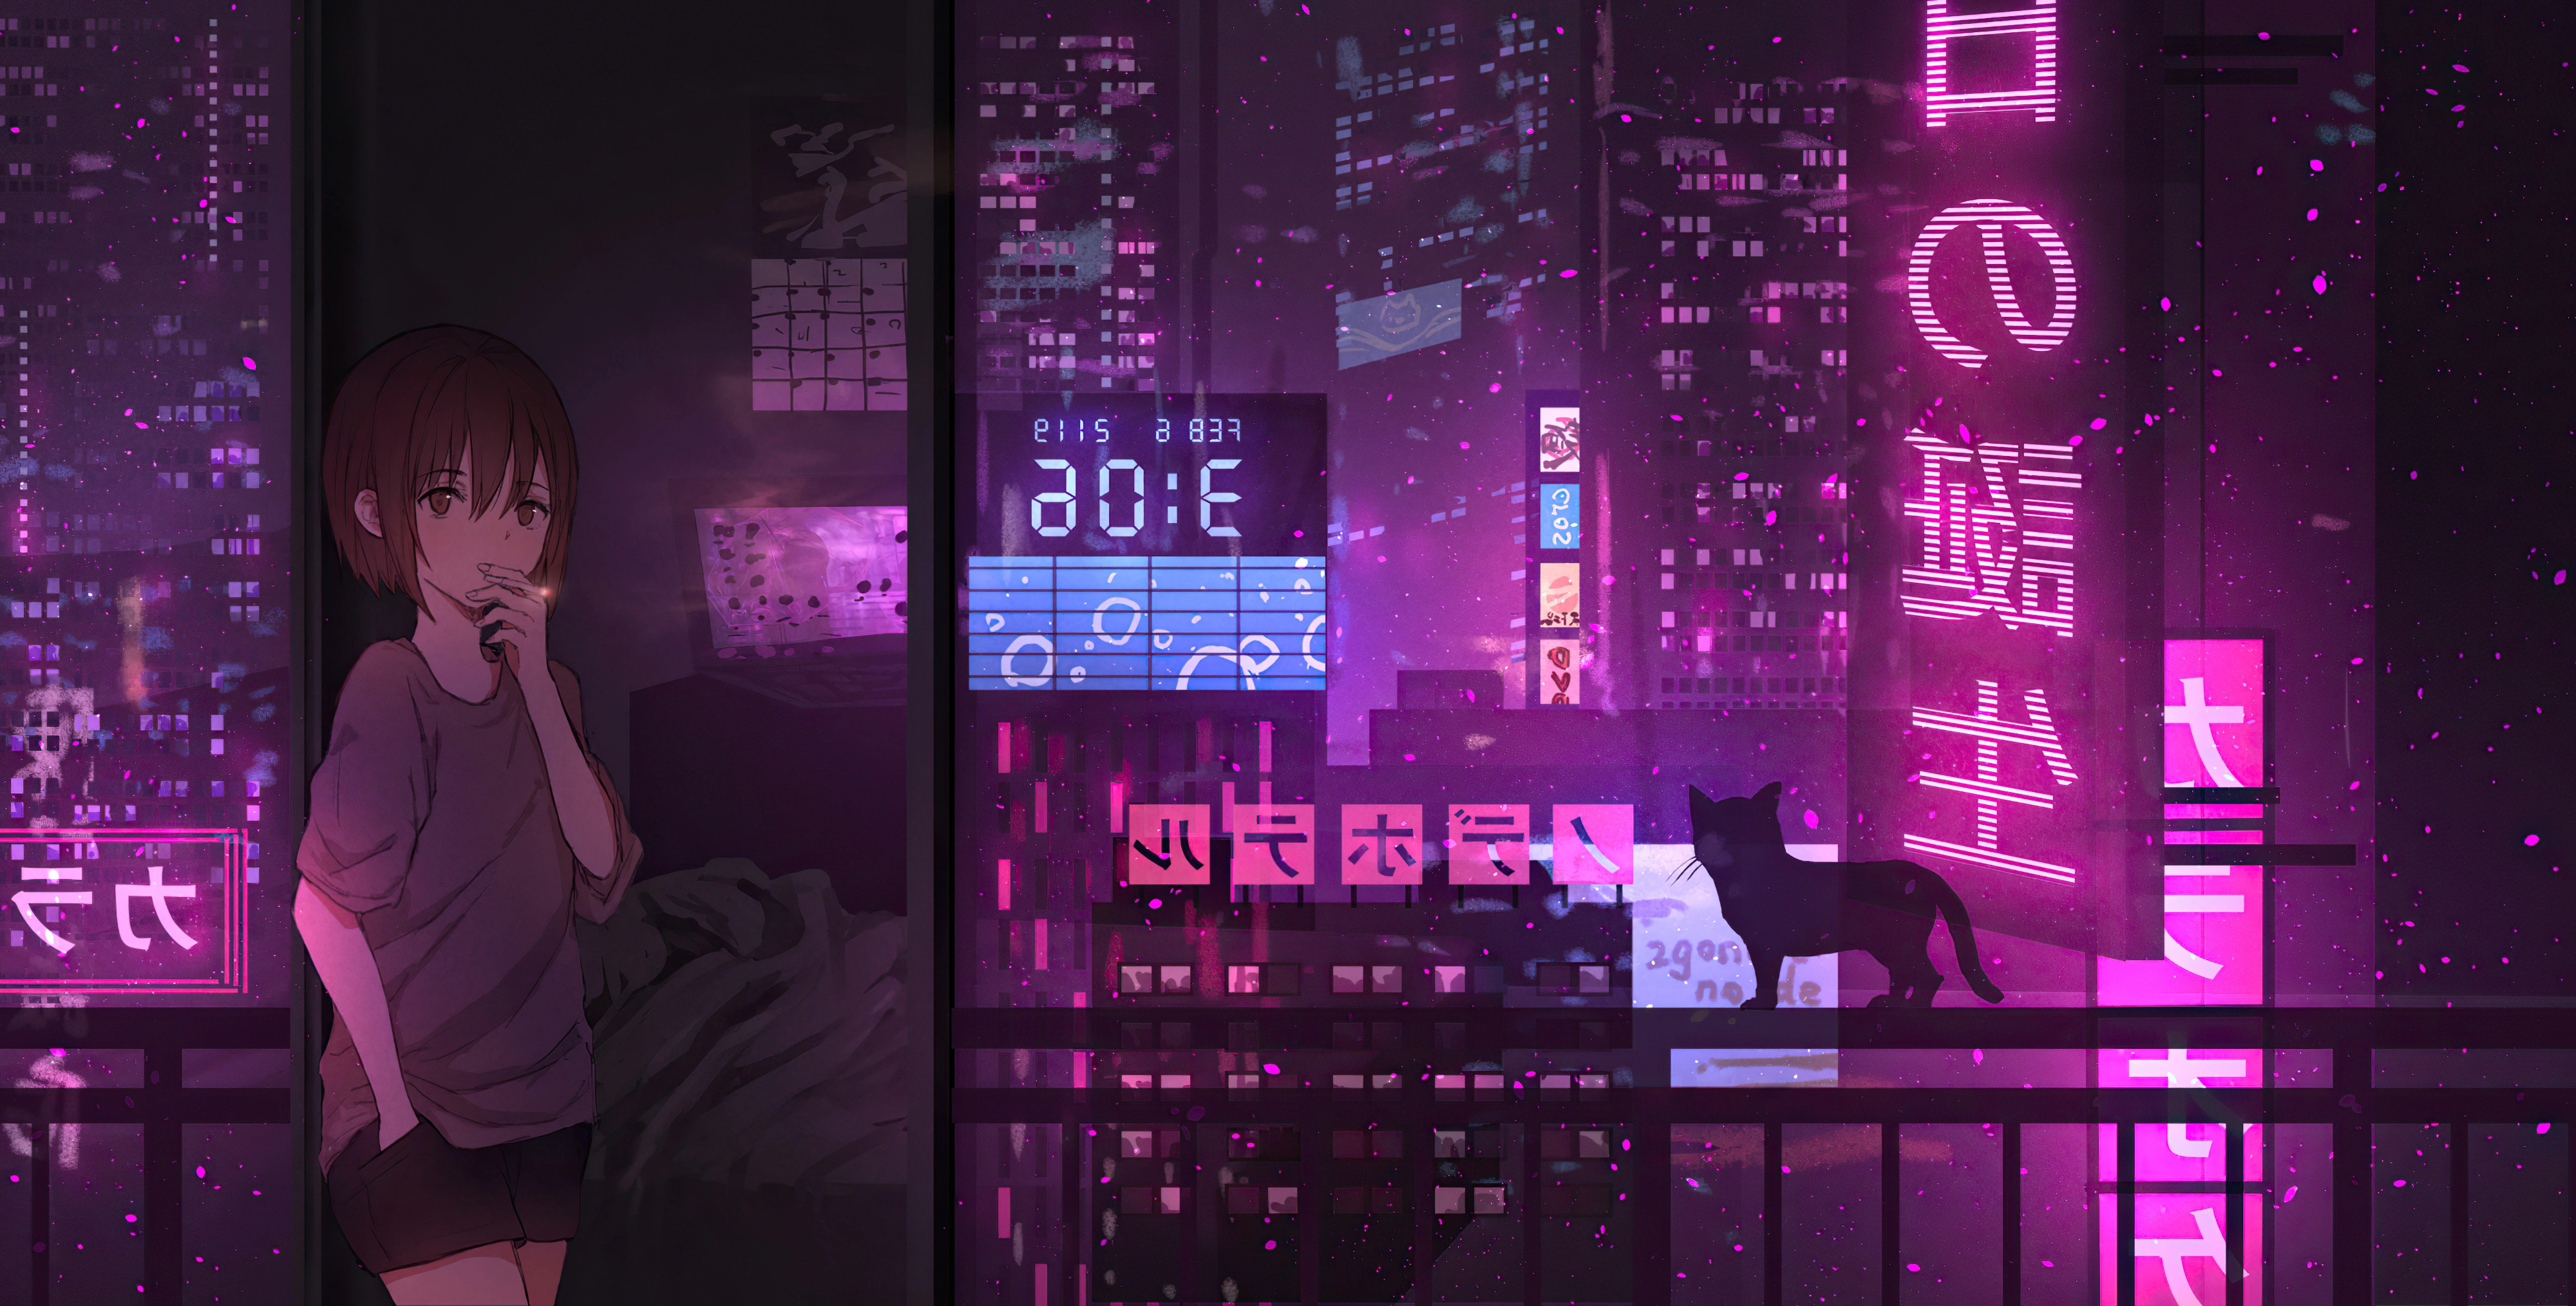 Anime Neon In 3D Computer Wallpapers, Desktop Backgrounds ... Desktop  Background